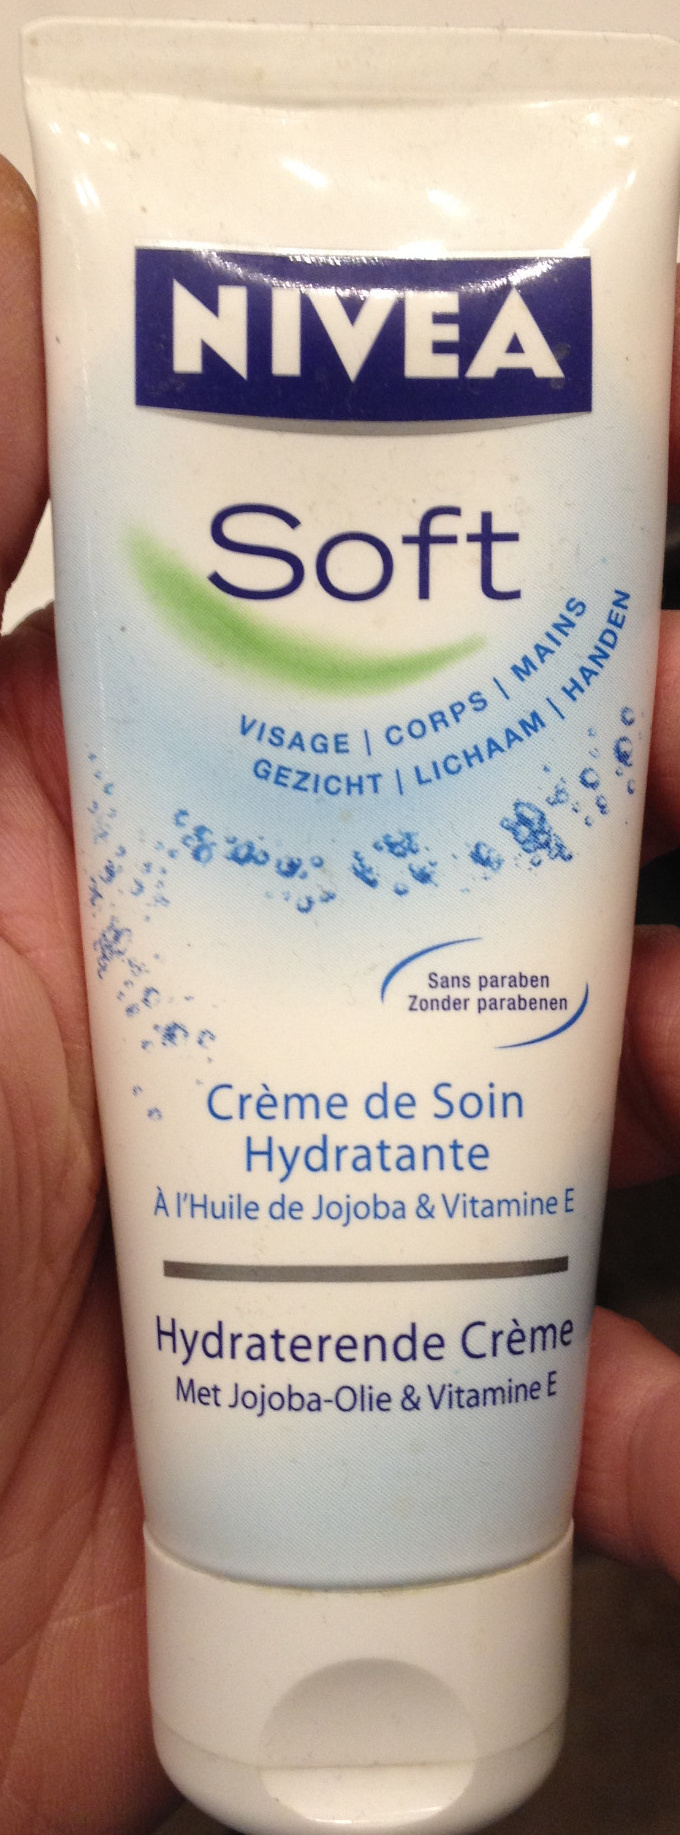 Soft Crème de soin hydratante - Product - fr